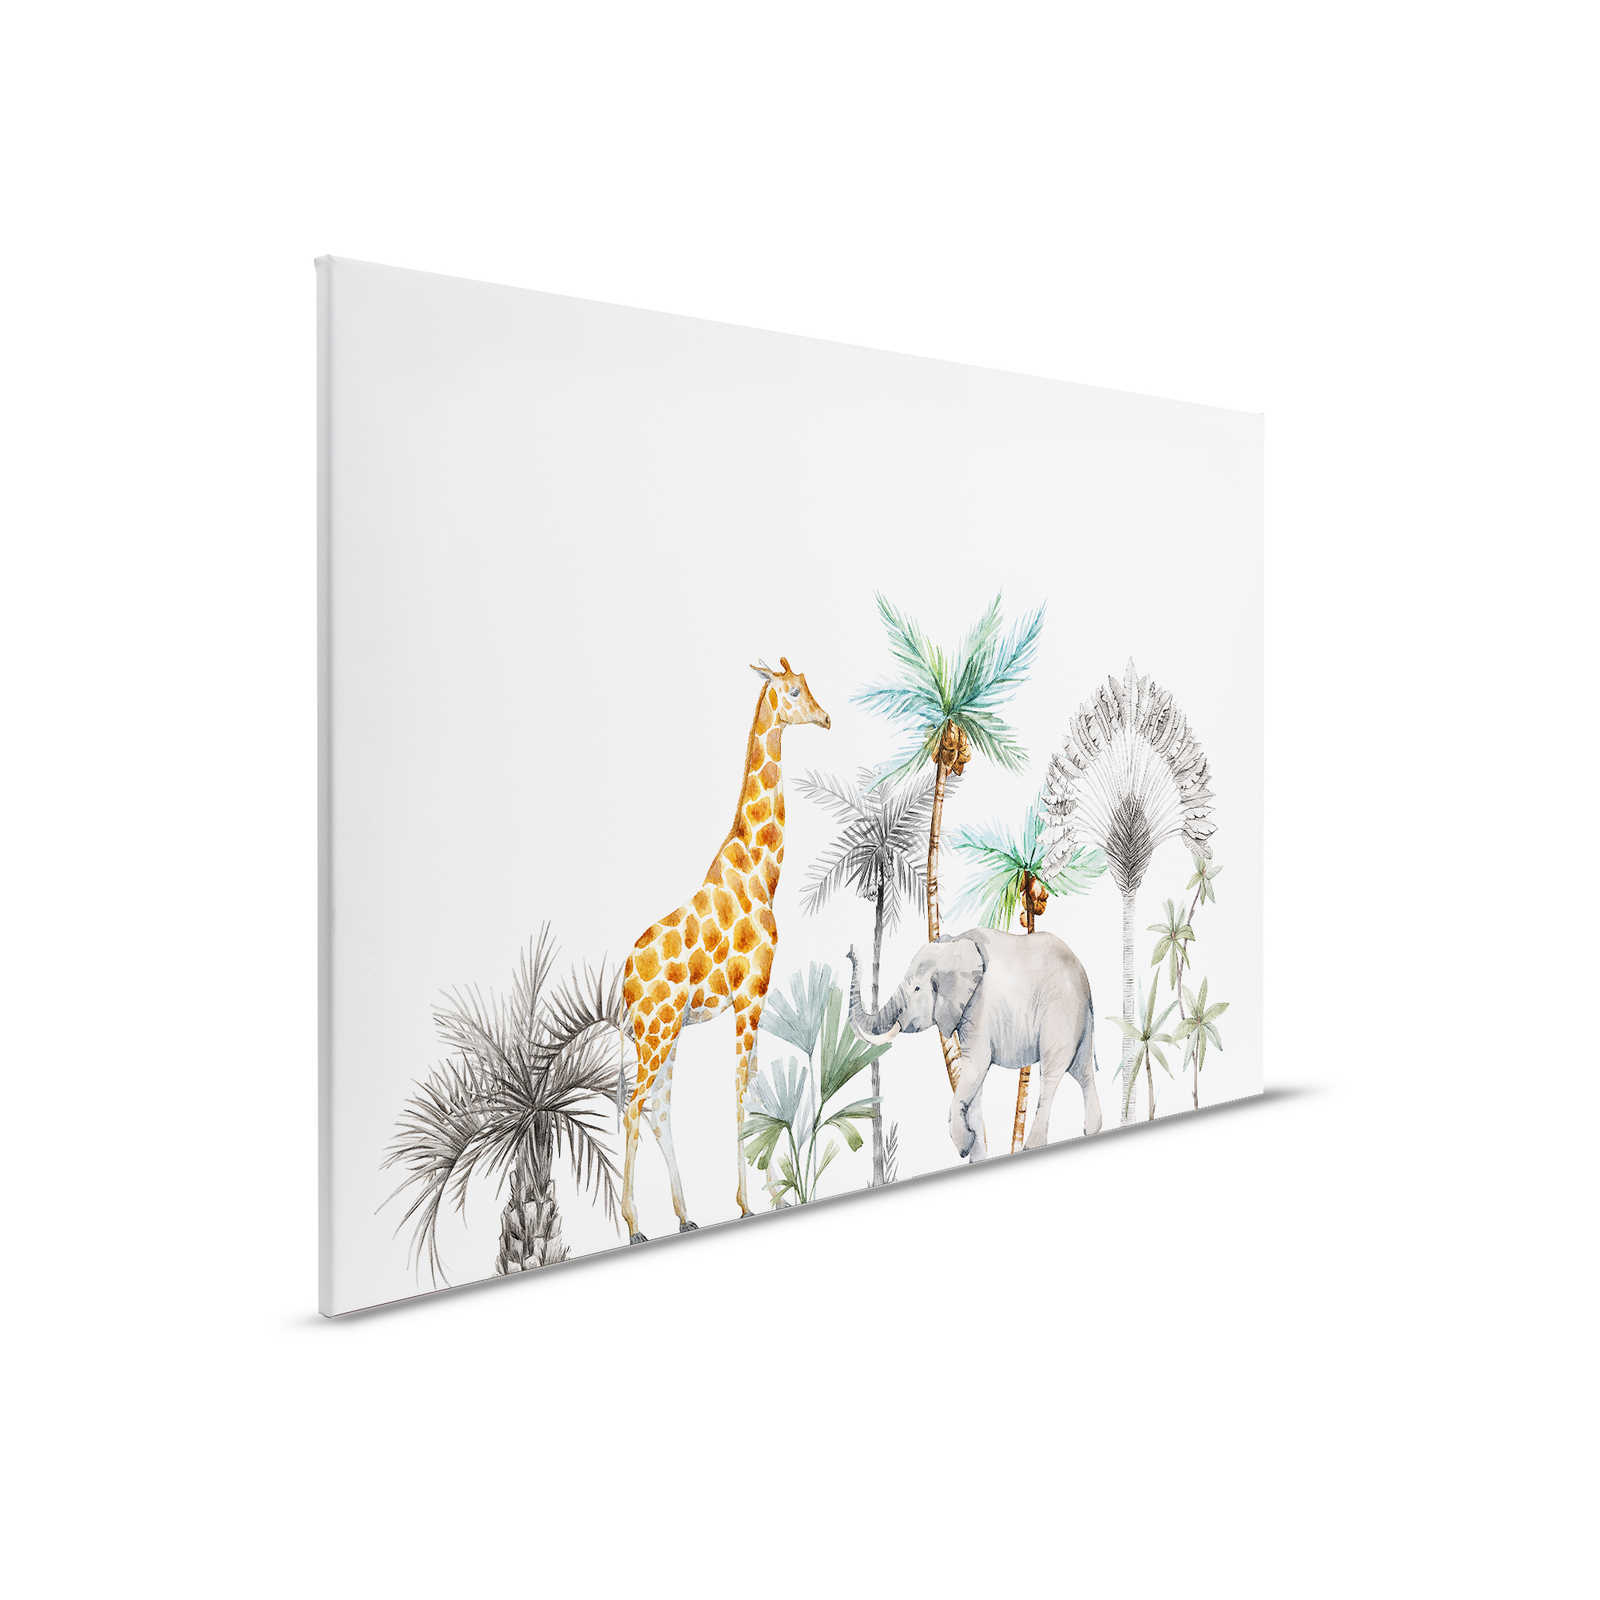         Leinwandbild für das Kinderzimmer mit Tieren und Bäumen – 0,90 m x 0,60 m
    